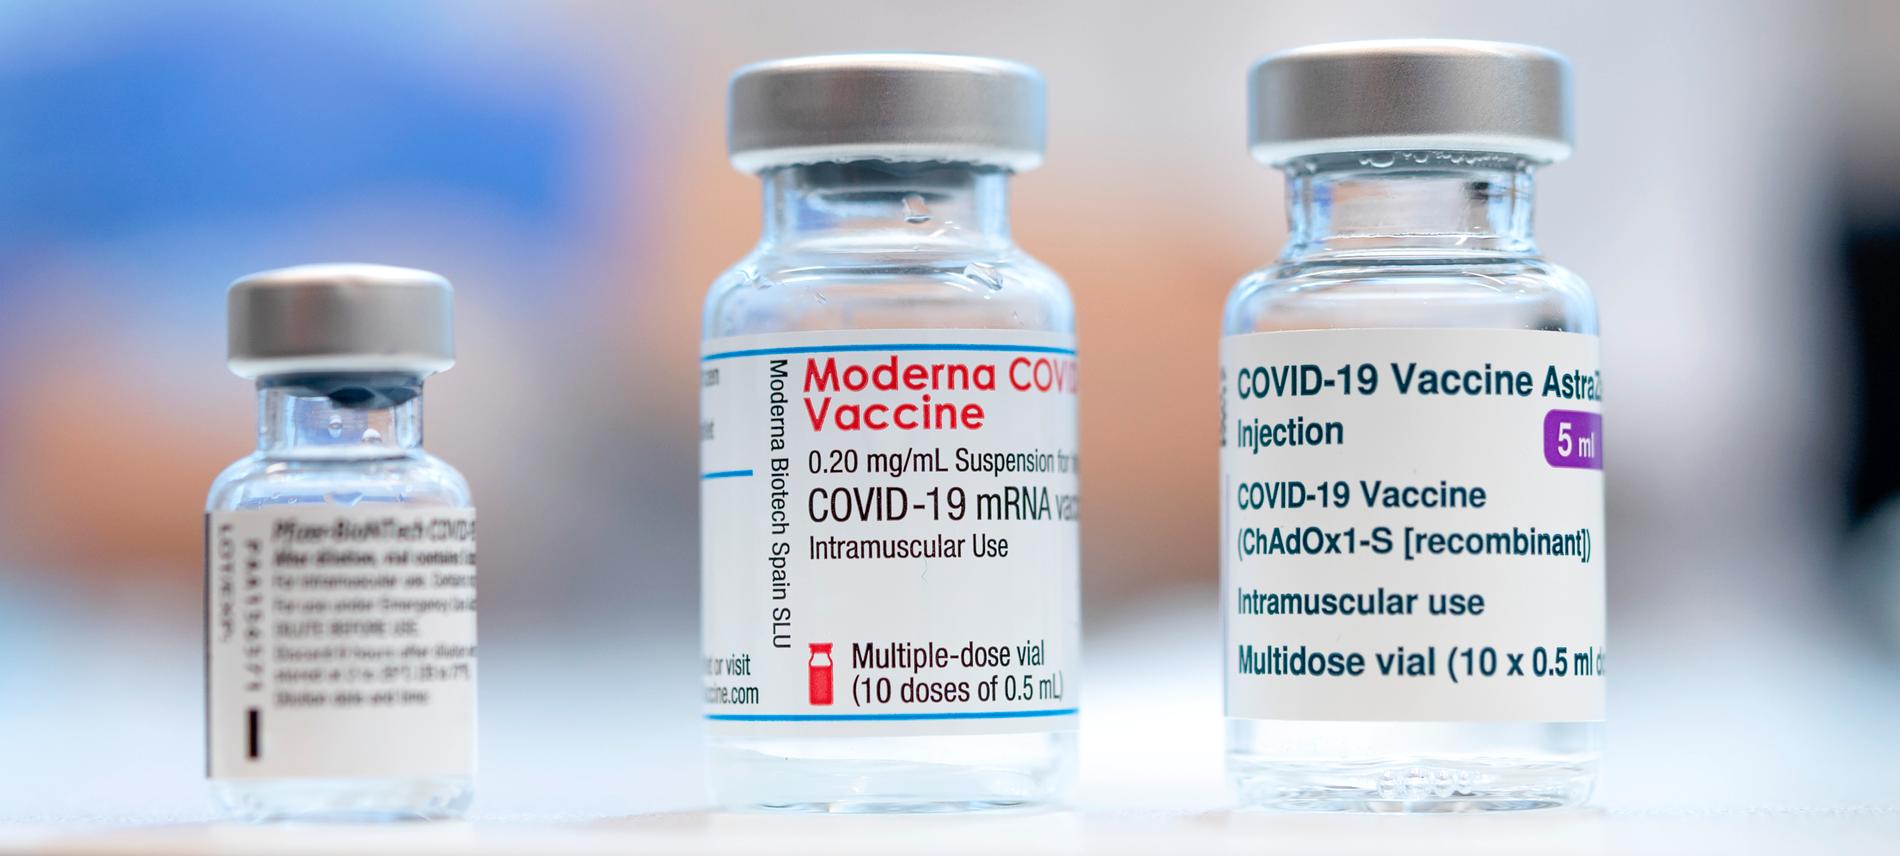 Vaccinen mot corona har visat sig fungera bra mot att drabbas av svår covid-19. Men skyddet är inte totalt – även vaccinerade blir sjuka och kan föra smittan vidare. 